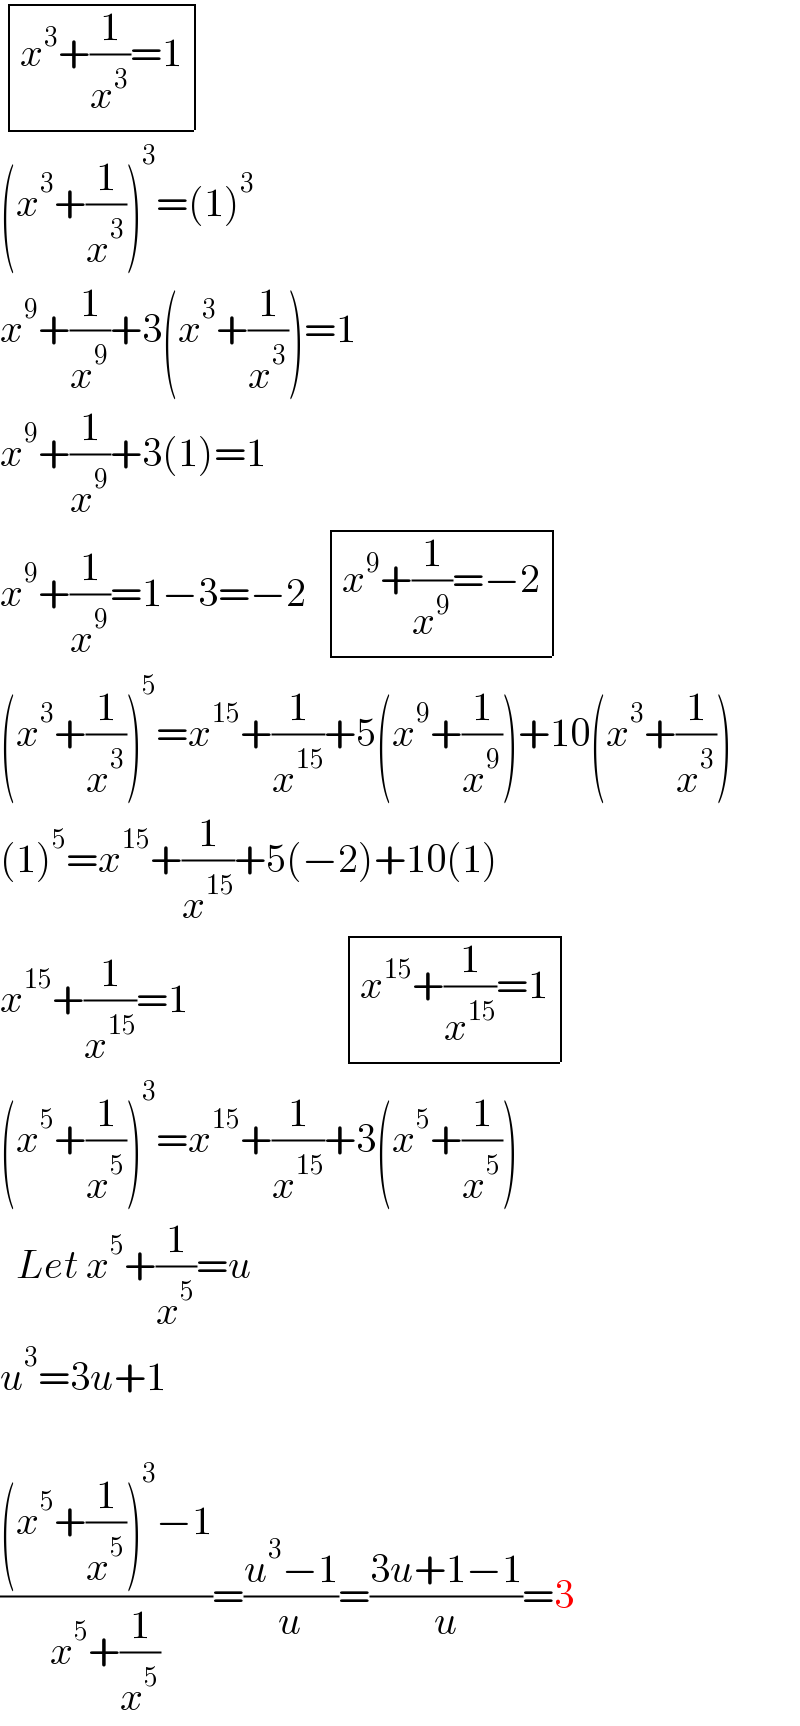  determinant (((x^3 +(1/x^3 )=1)))  (x^3 +(1/x^3 ))^3 =(1)^3   x^9 +(1/x^9 )+3(x^3 +(1/x^3 ))=1  x^9 +(1/x^9 )+3(1)=1  x^9 +(1/x^9 )=1−3=−2   determinant (((x^9 +(1/x^9 )=−2)))  (x^3 +(1/x^3 ))^5 =x^(15) +(1/x^(15) )+5(x^9 +(1/x^9 ))+10(x^3 +(1/x^3 ))  (1)^5 =x^(15) +(1/x^(15) )+5(−2)+10(1)  x^(15) +(1/x^(15) )=1                    determinant (((x^(15) +(1/x^(15) )=1)))  (x^5 +(1/x^5 ))^3 =x^(15) +(1/x^(15) )+3(x^5 +(1/x^5 ))    Let x^5 +(1/x^5 )=u  u^3 =3u+1    (((x^5 +(1/x^5 ))^3 −1)/(x^5 +(1/x^5 )))=((u^3 −1)/u)=((3u+1−1)/u)=3  